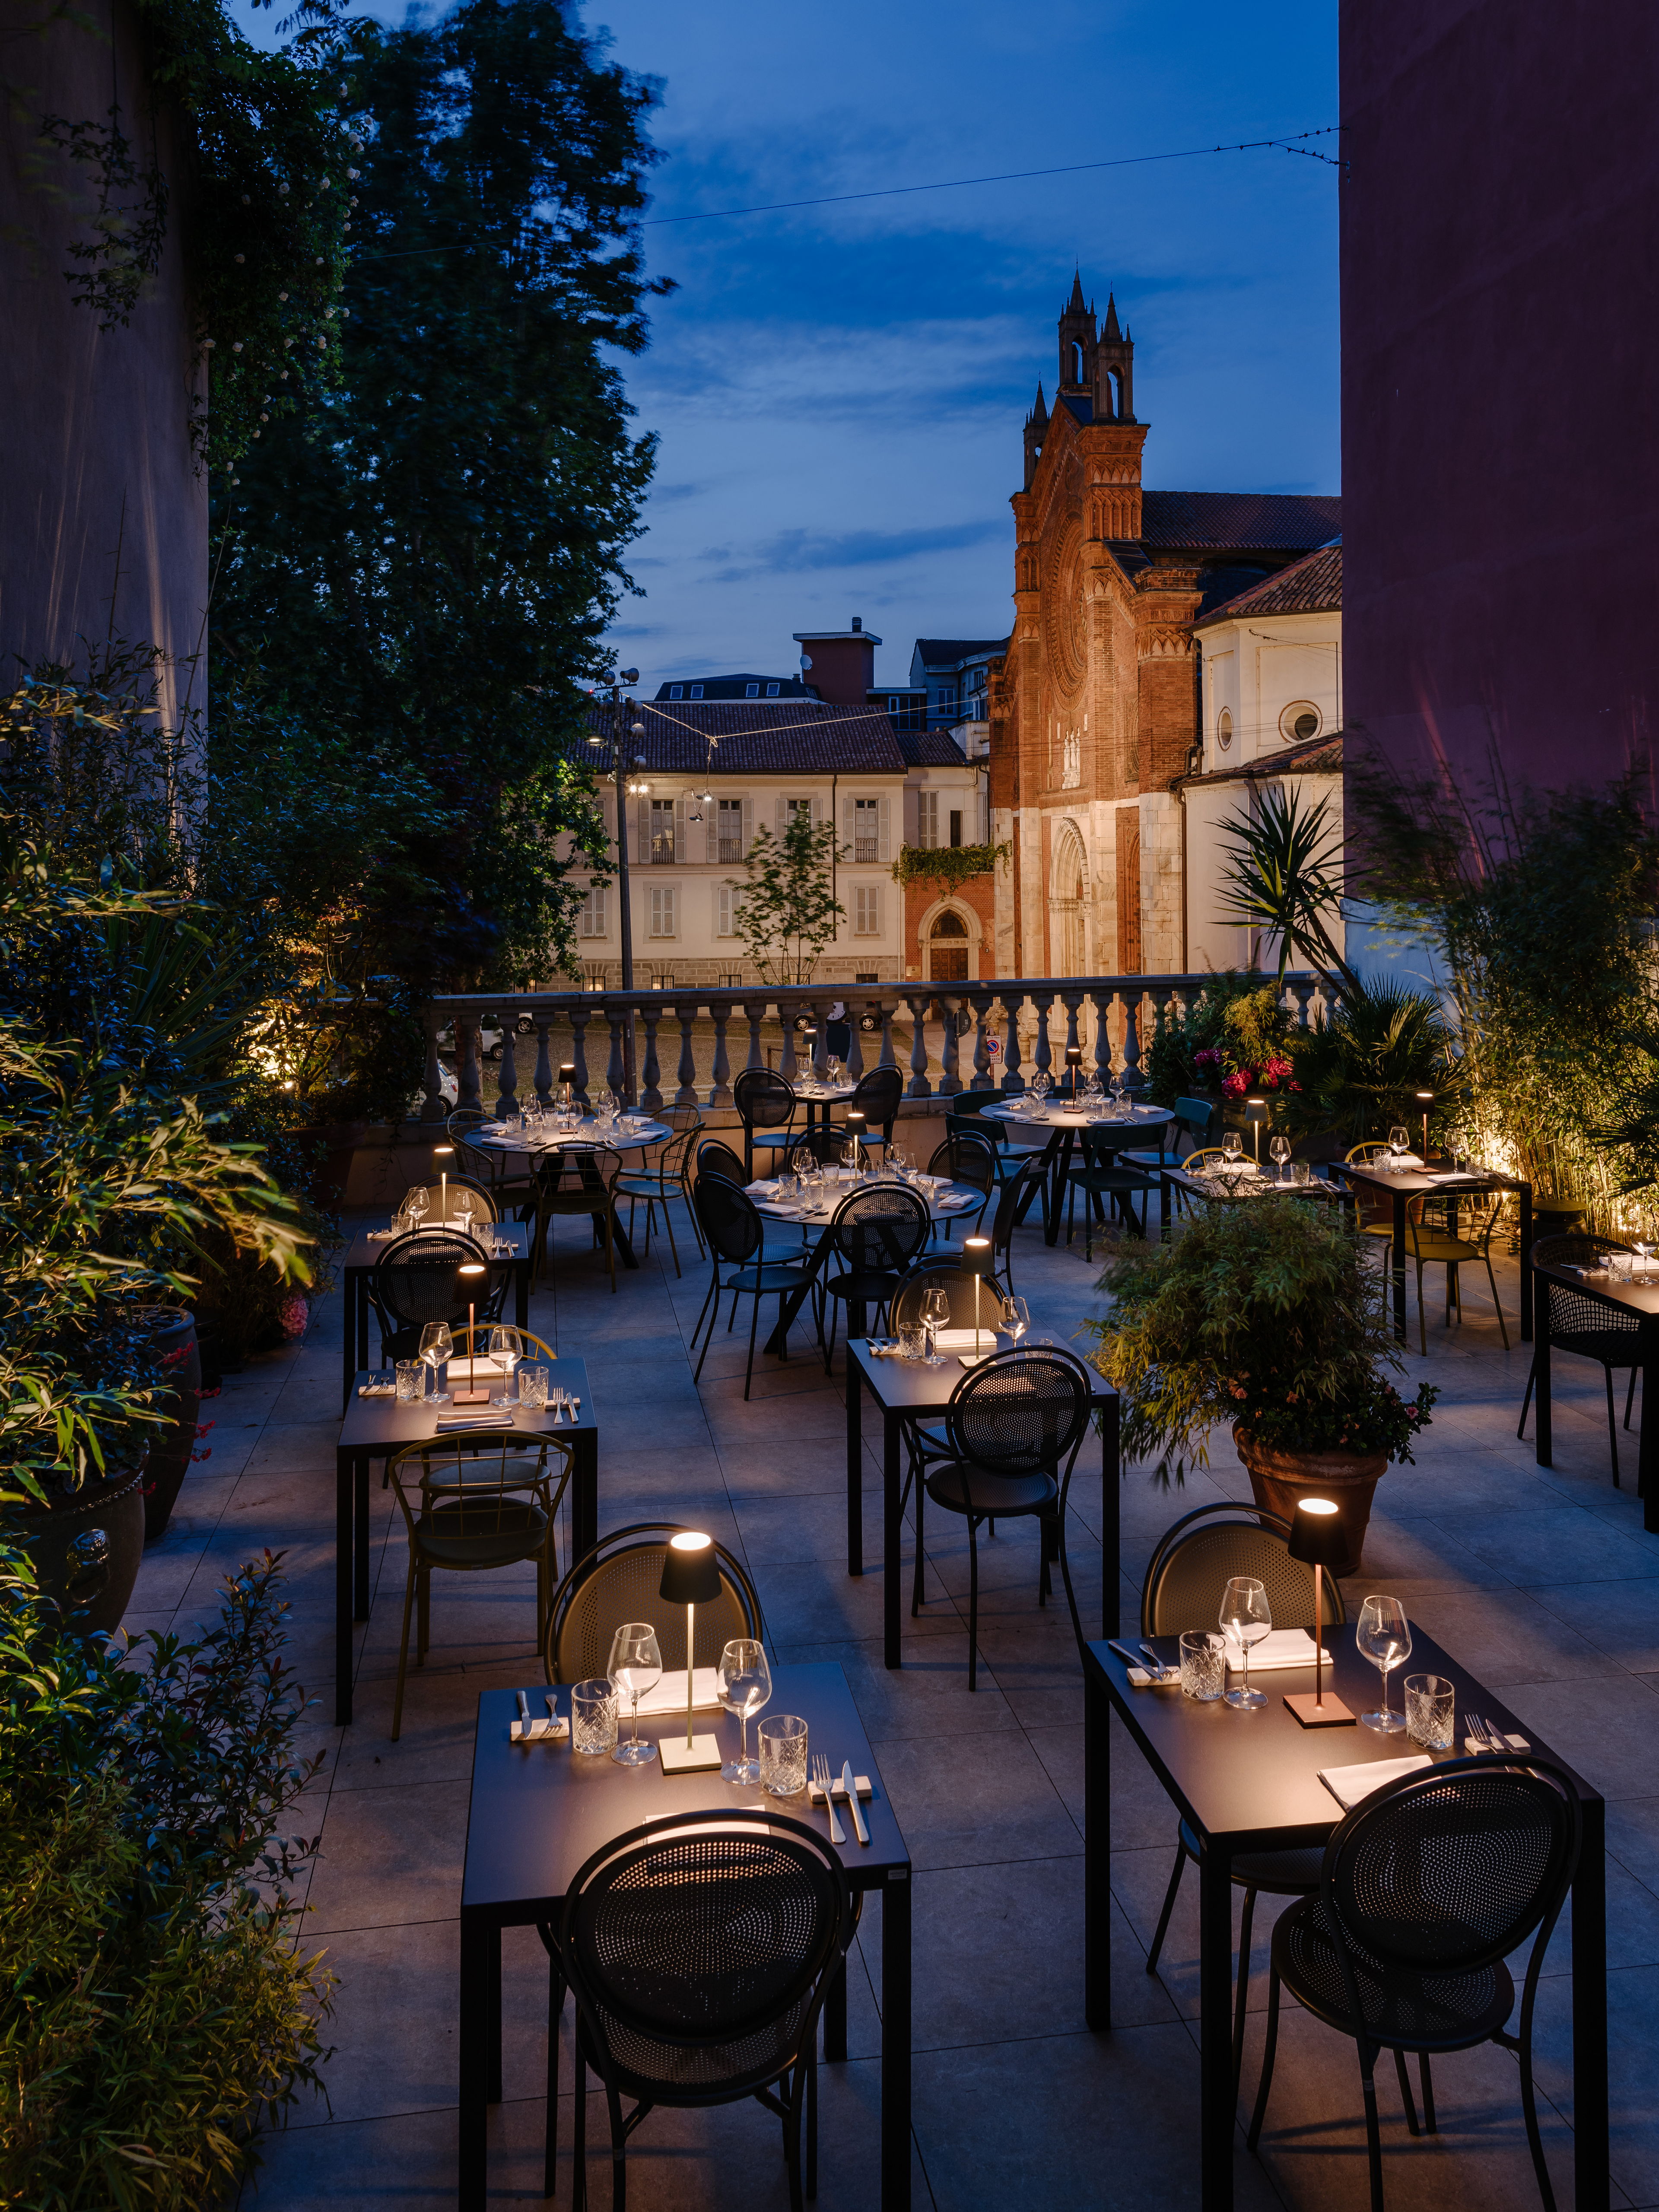 Clotilde Brera riapre. La terrazza più romantica di Milano riprende vita con tante novità: le distanze aumentano, ma la dimensione sarà più intima e familiare che mai.